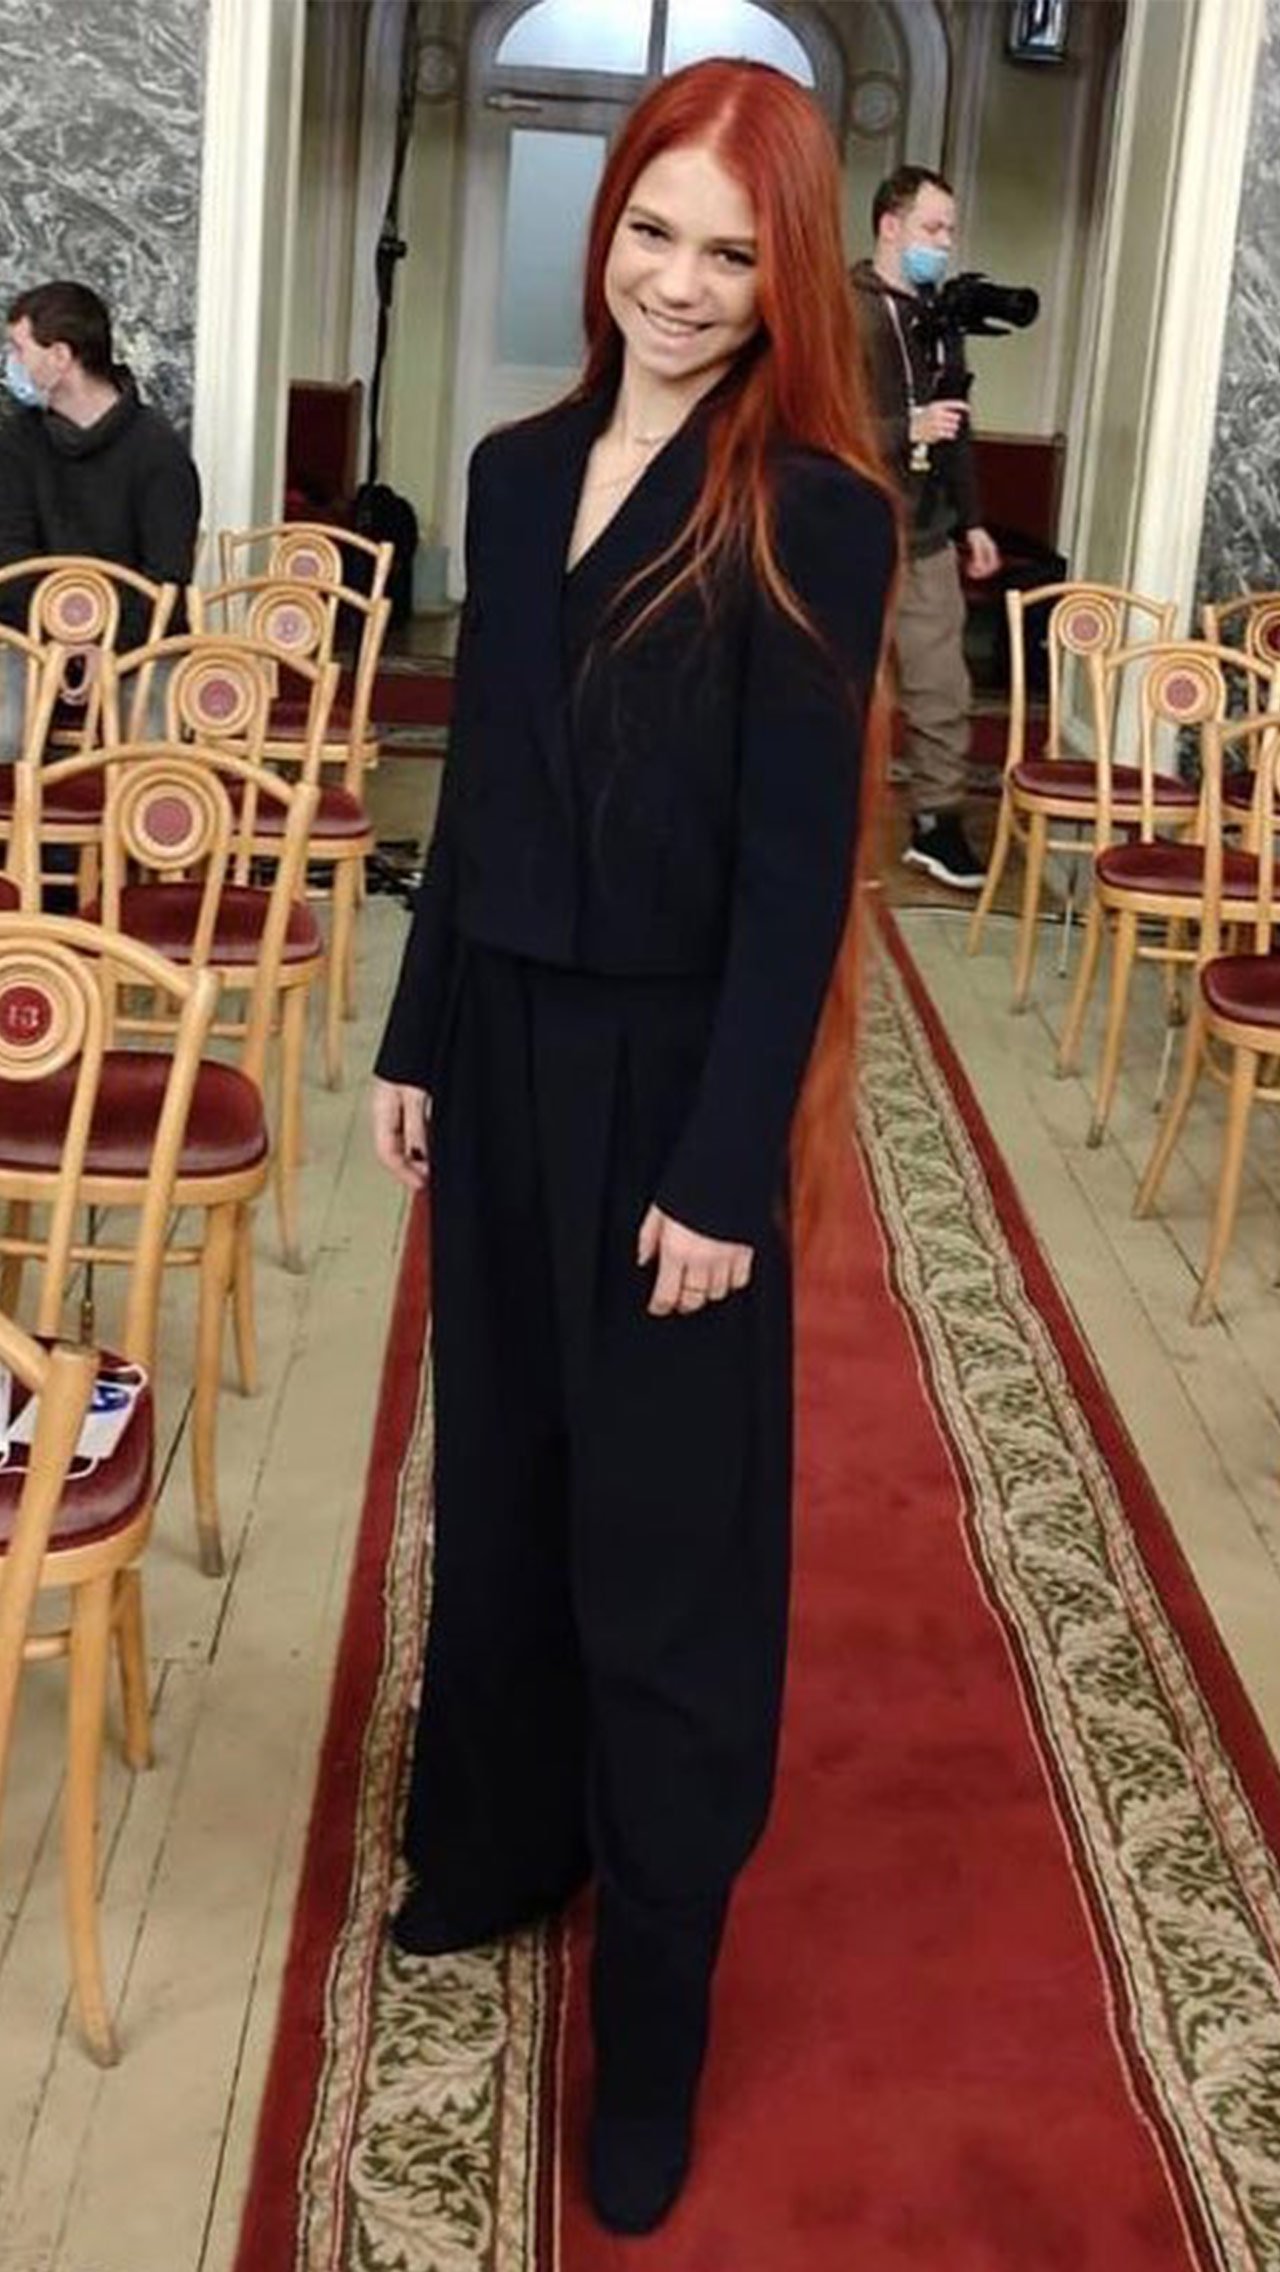 Александра Трусова пришла на жеребьёвку в элегантном брючном костюме.